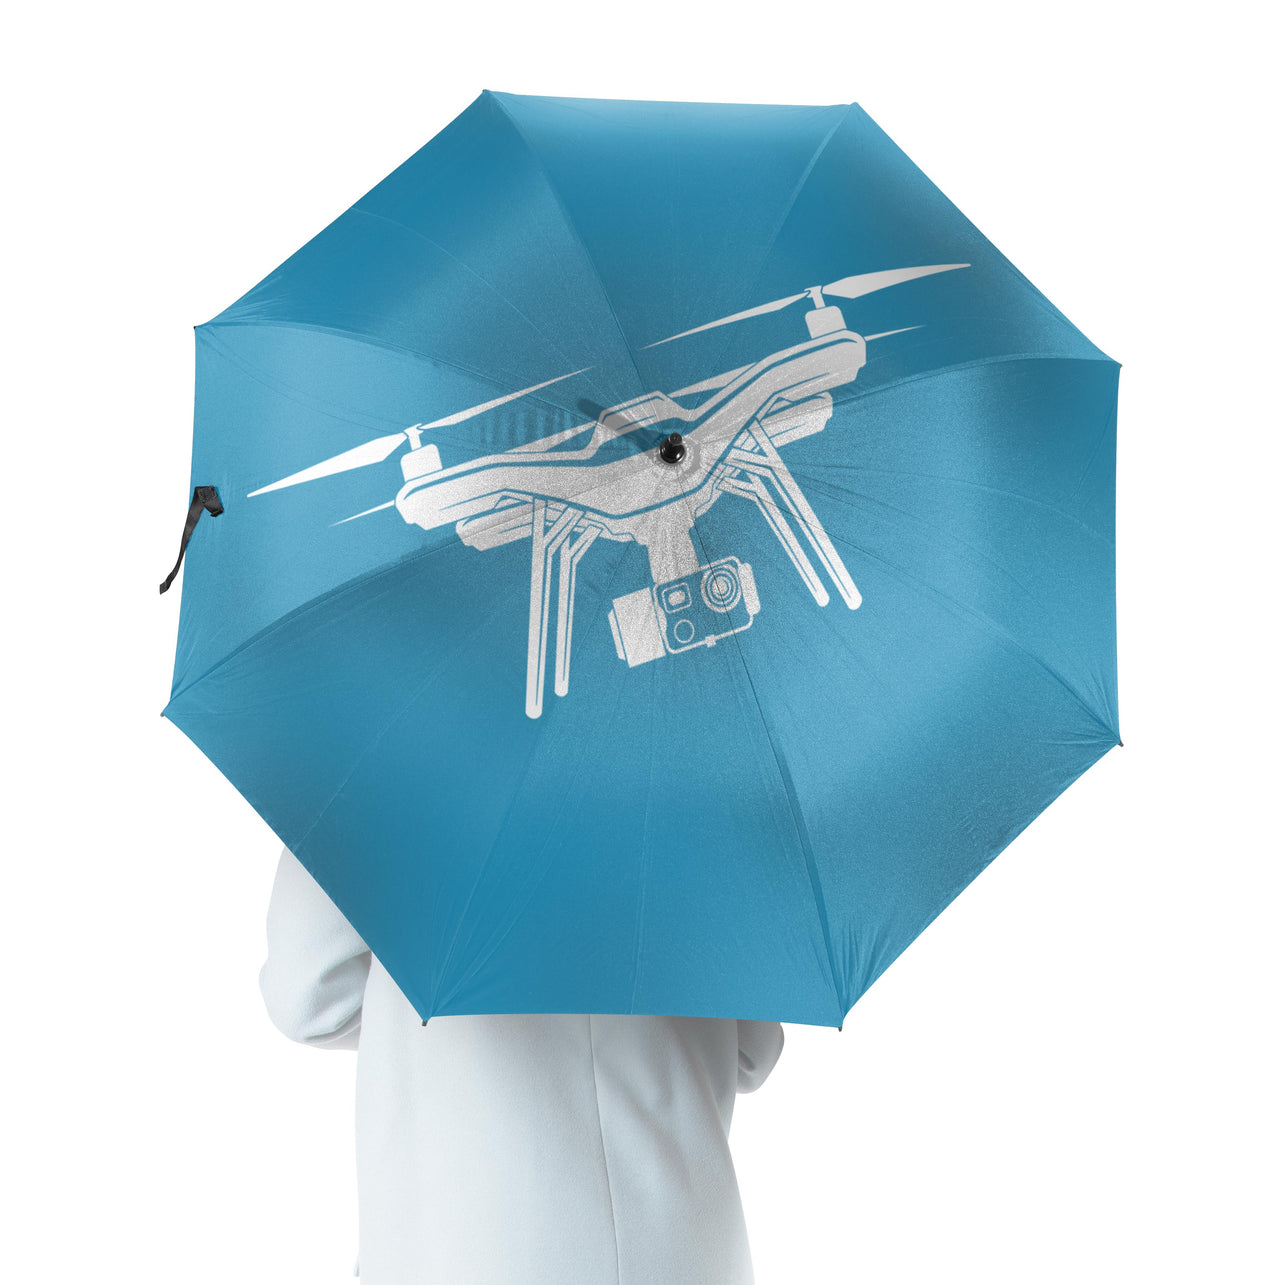 Drone Silhouette Designed Umbrella